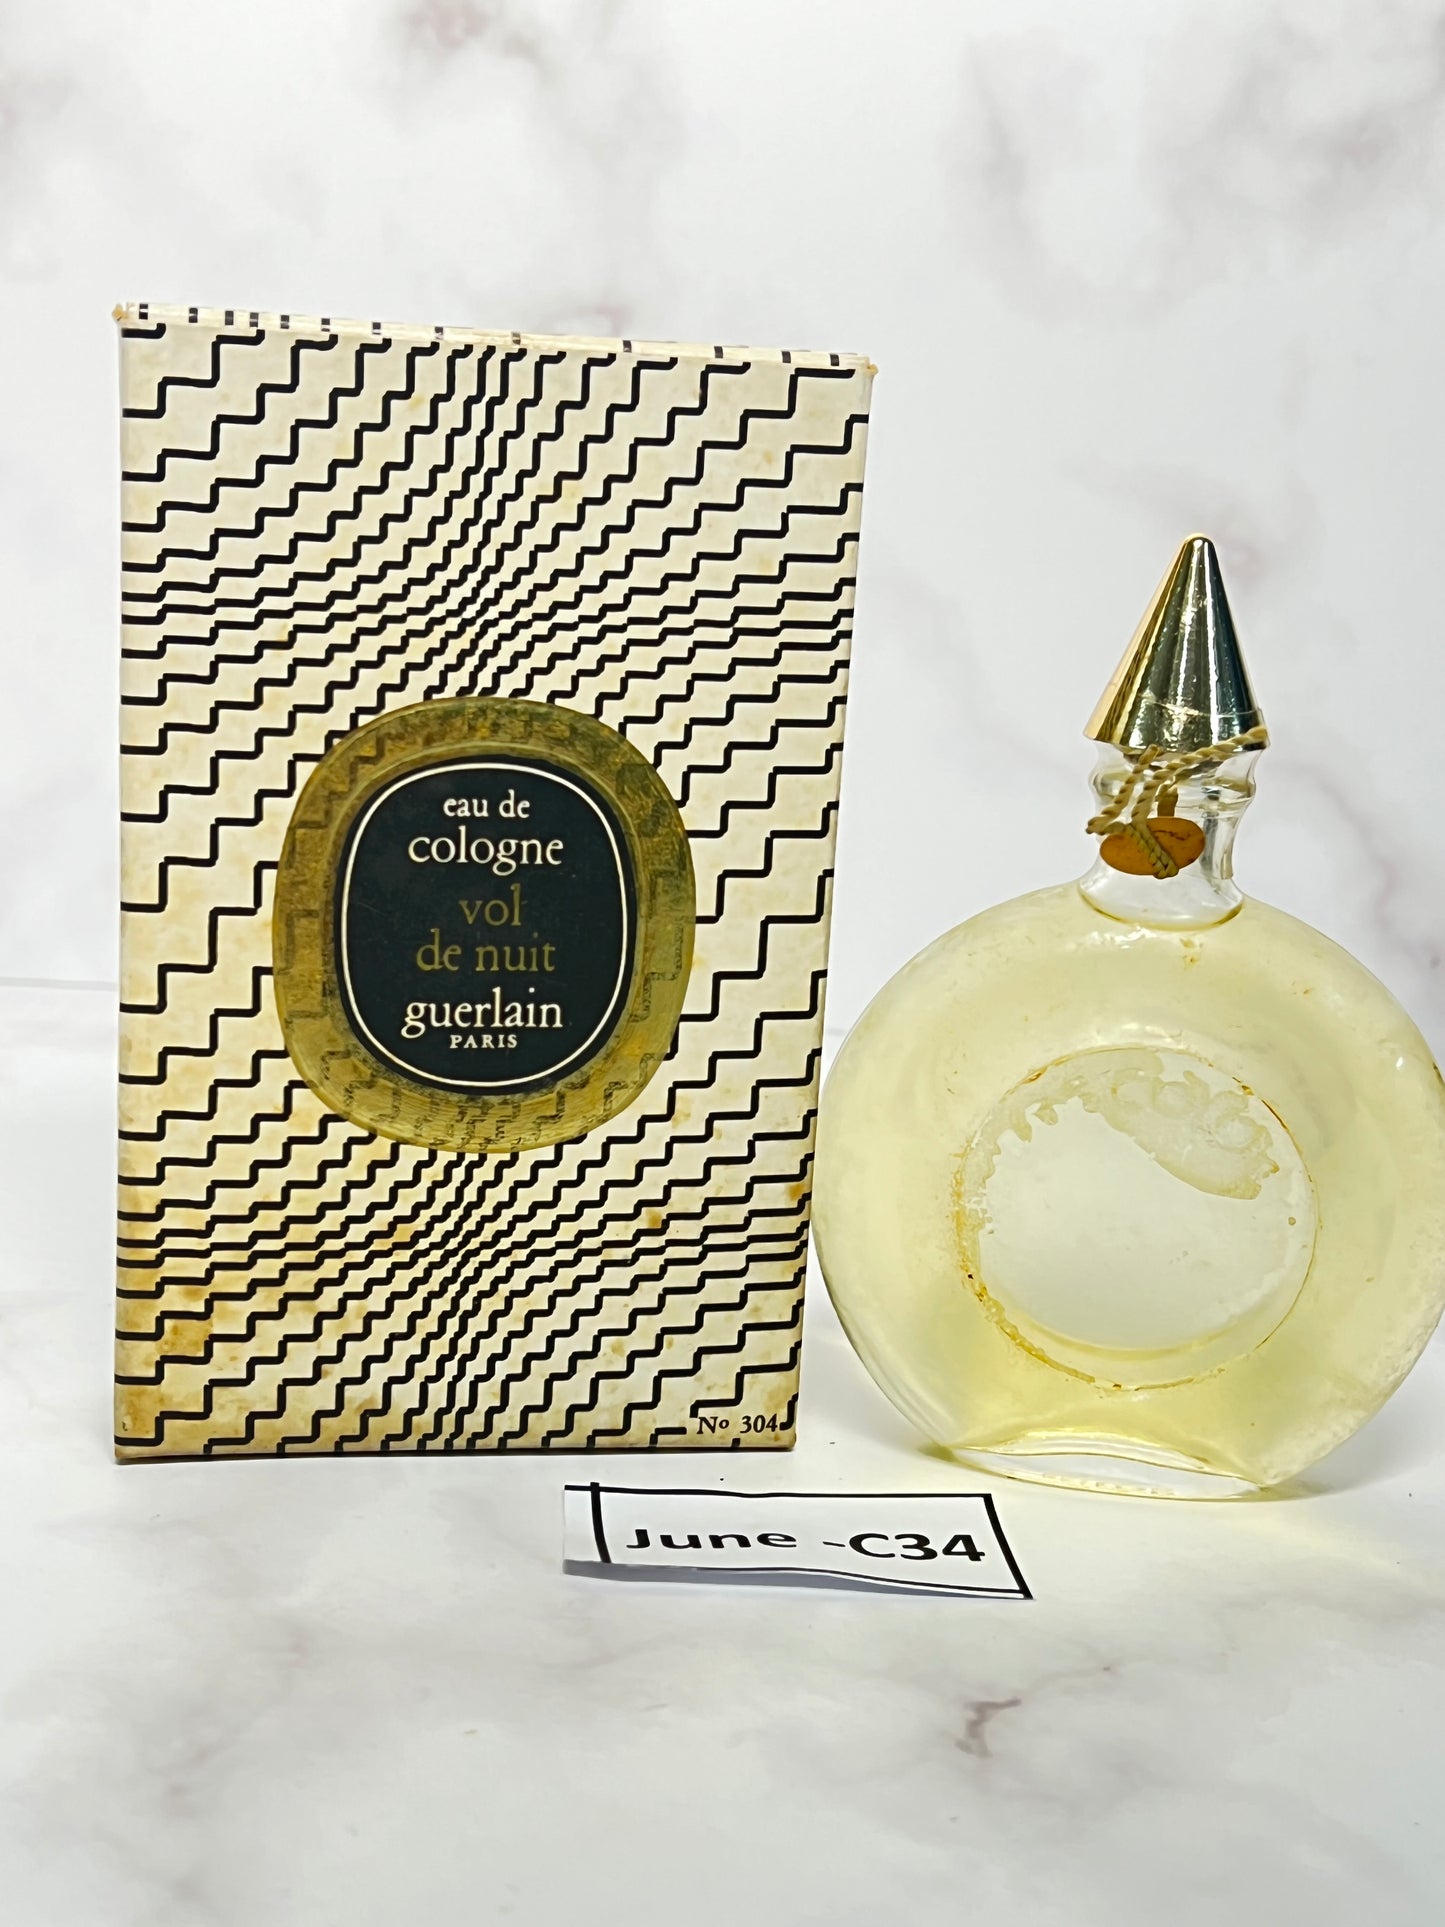 Rare Guerlain Vol de nuit  45 ml  1.5 oz eau de Cologne perfume  - JUNE-C34